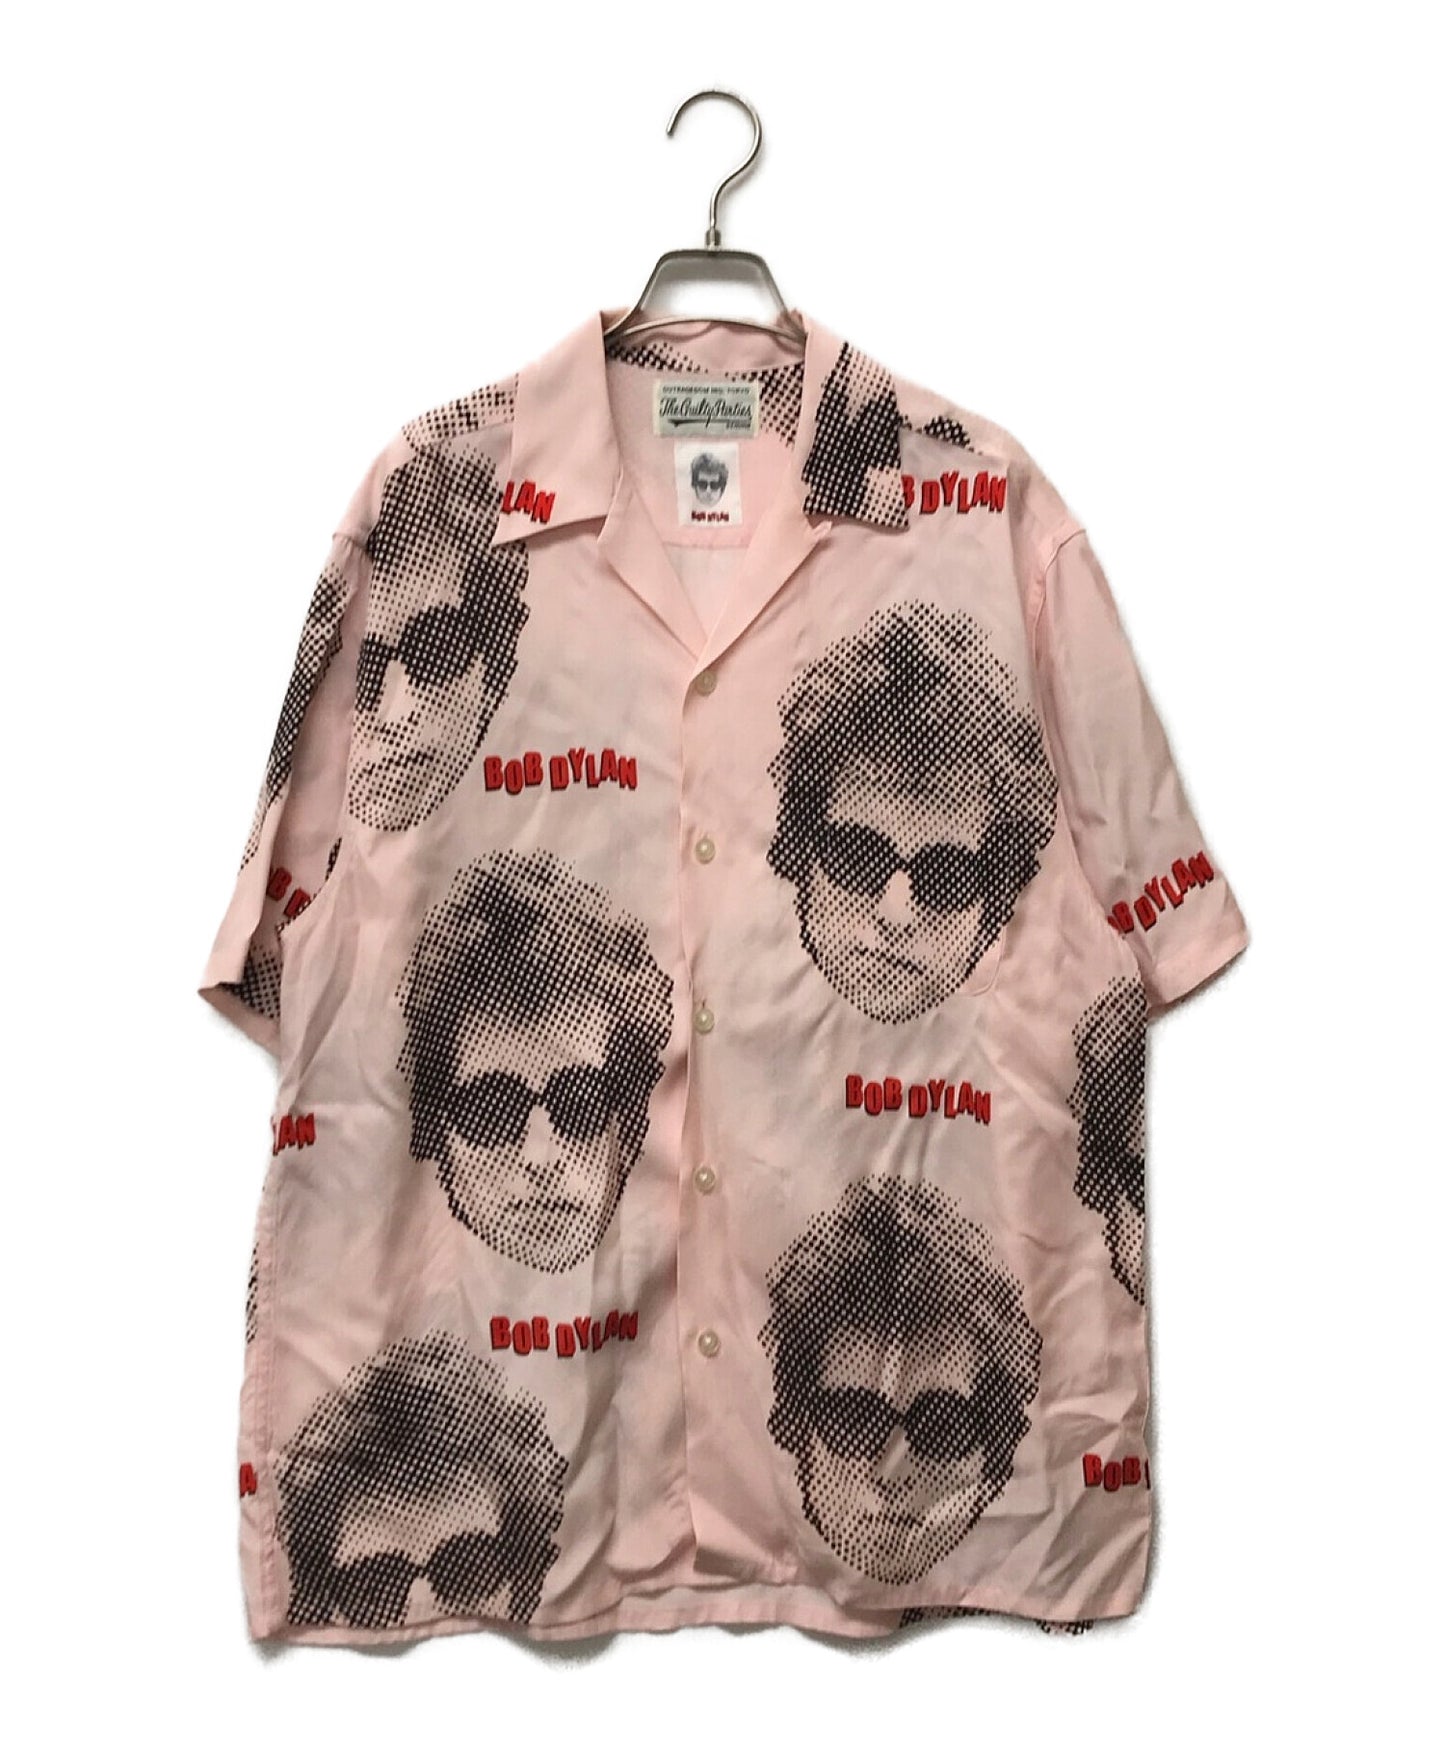 Wacko Maria Bob Dylan S/S夏威夷衬衫